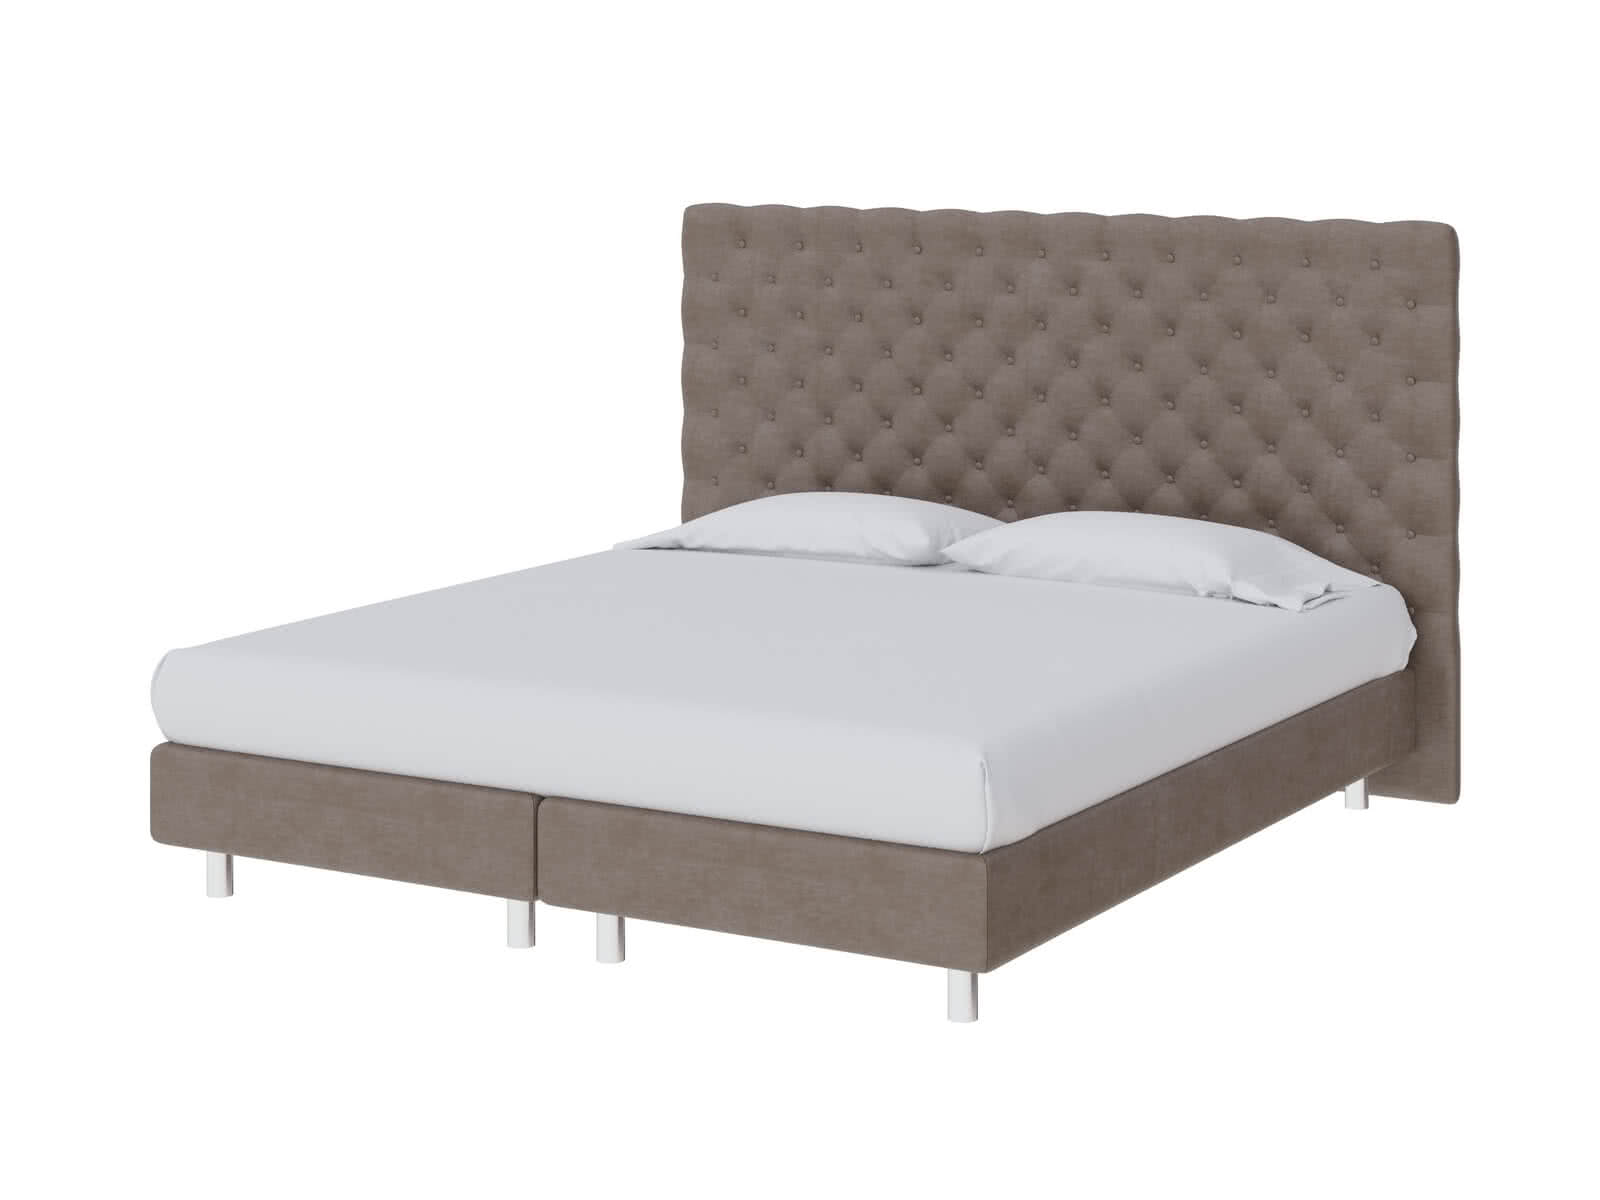 Купить кровать ProSon Кровать ProSon Europe Paris Lift, Лофти Лён 140 х 200 см Лофти Лён дешево на официальном сайте